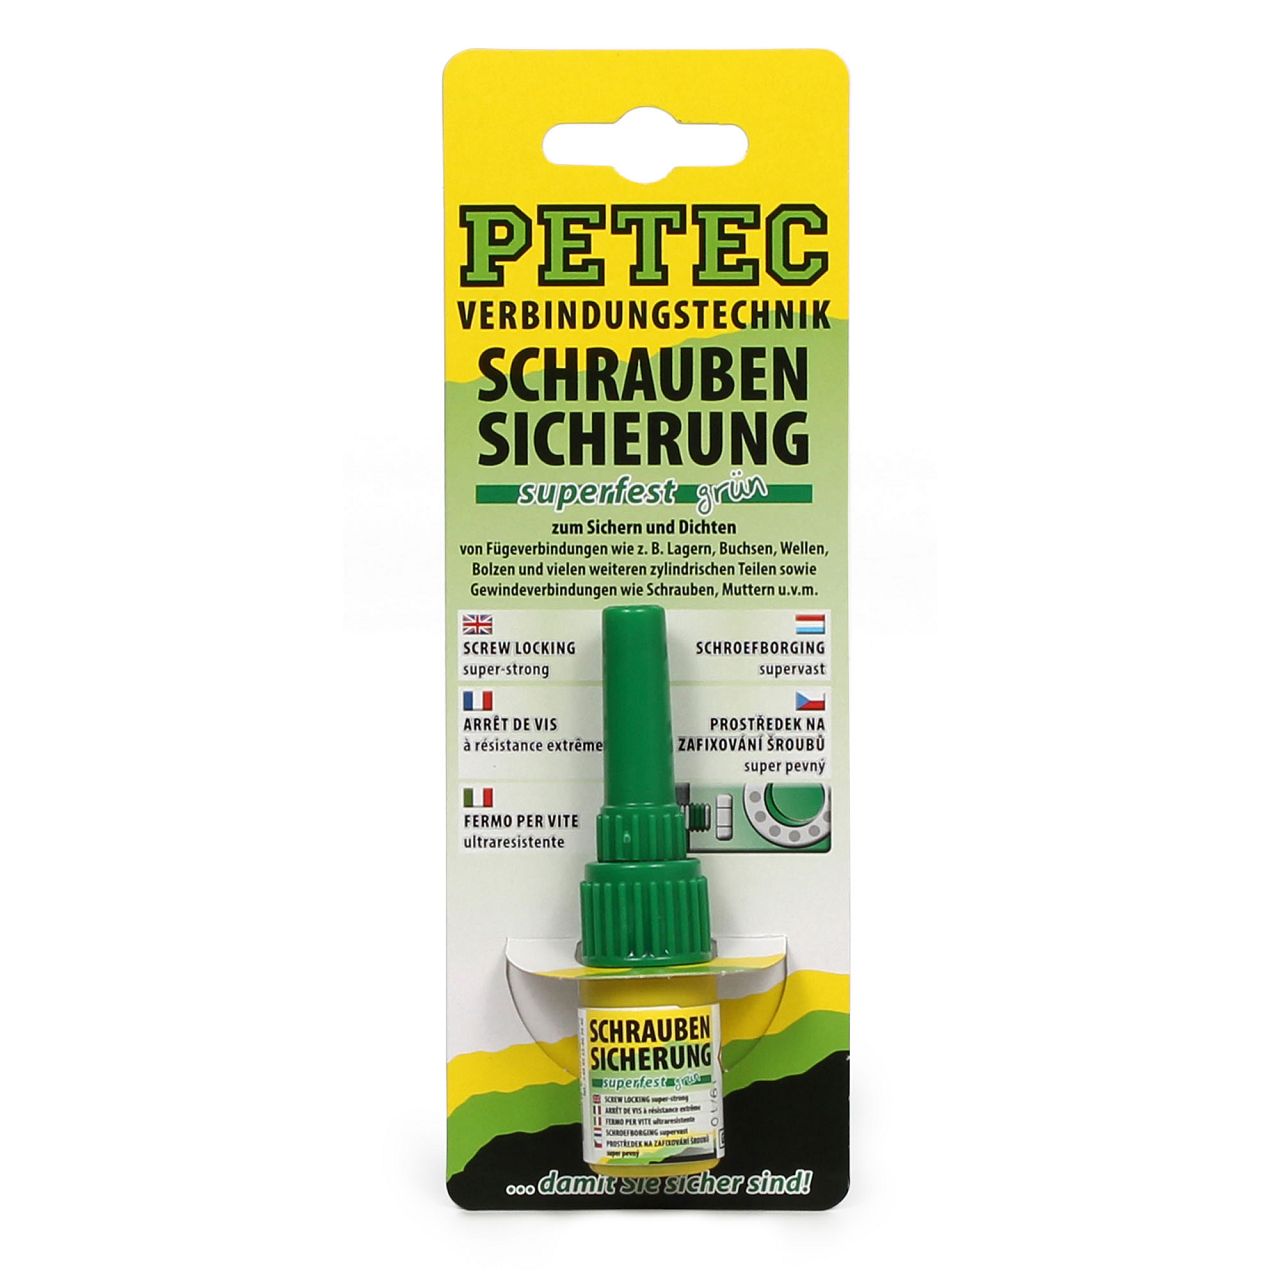 PETEC 93005 Schraubensicherung Superfest Sicherungskleber Klebstoff 5g GRÜN